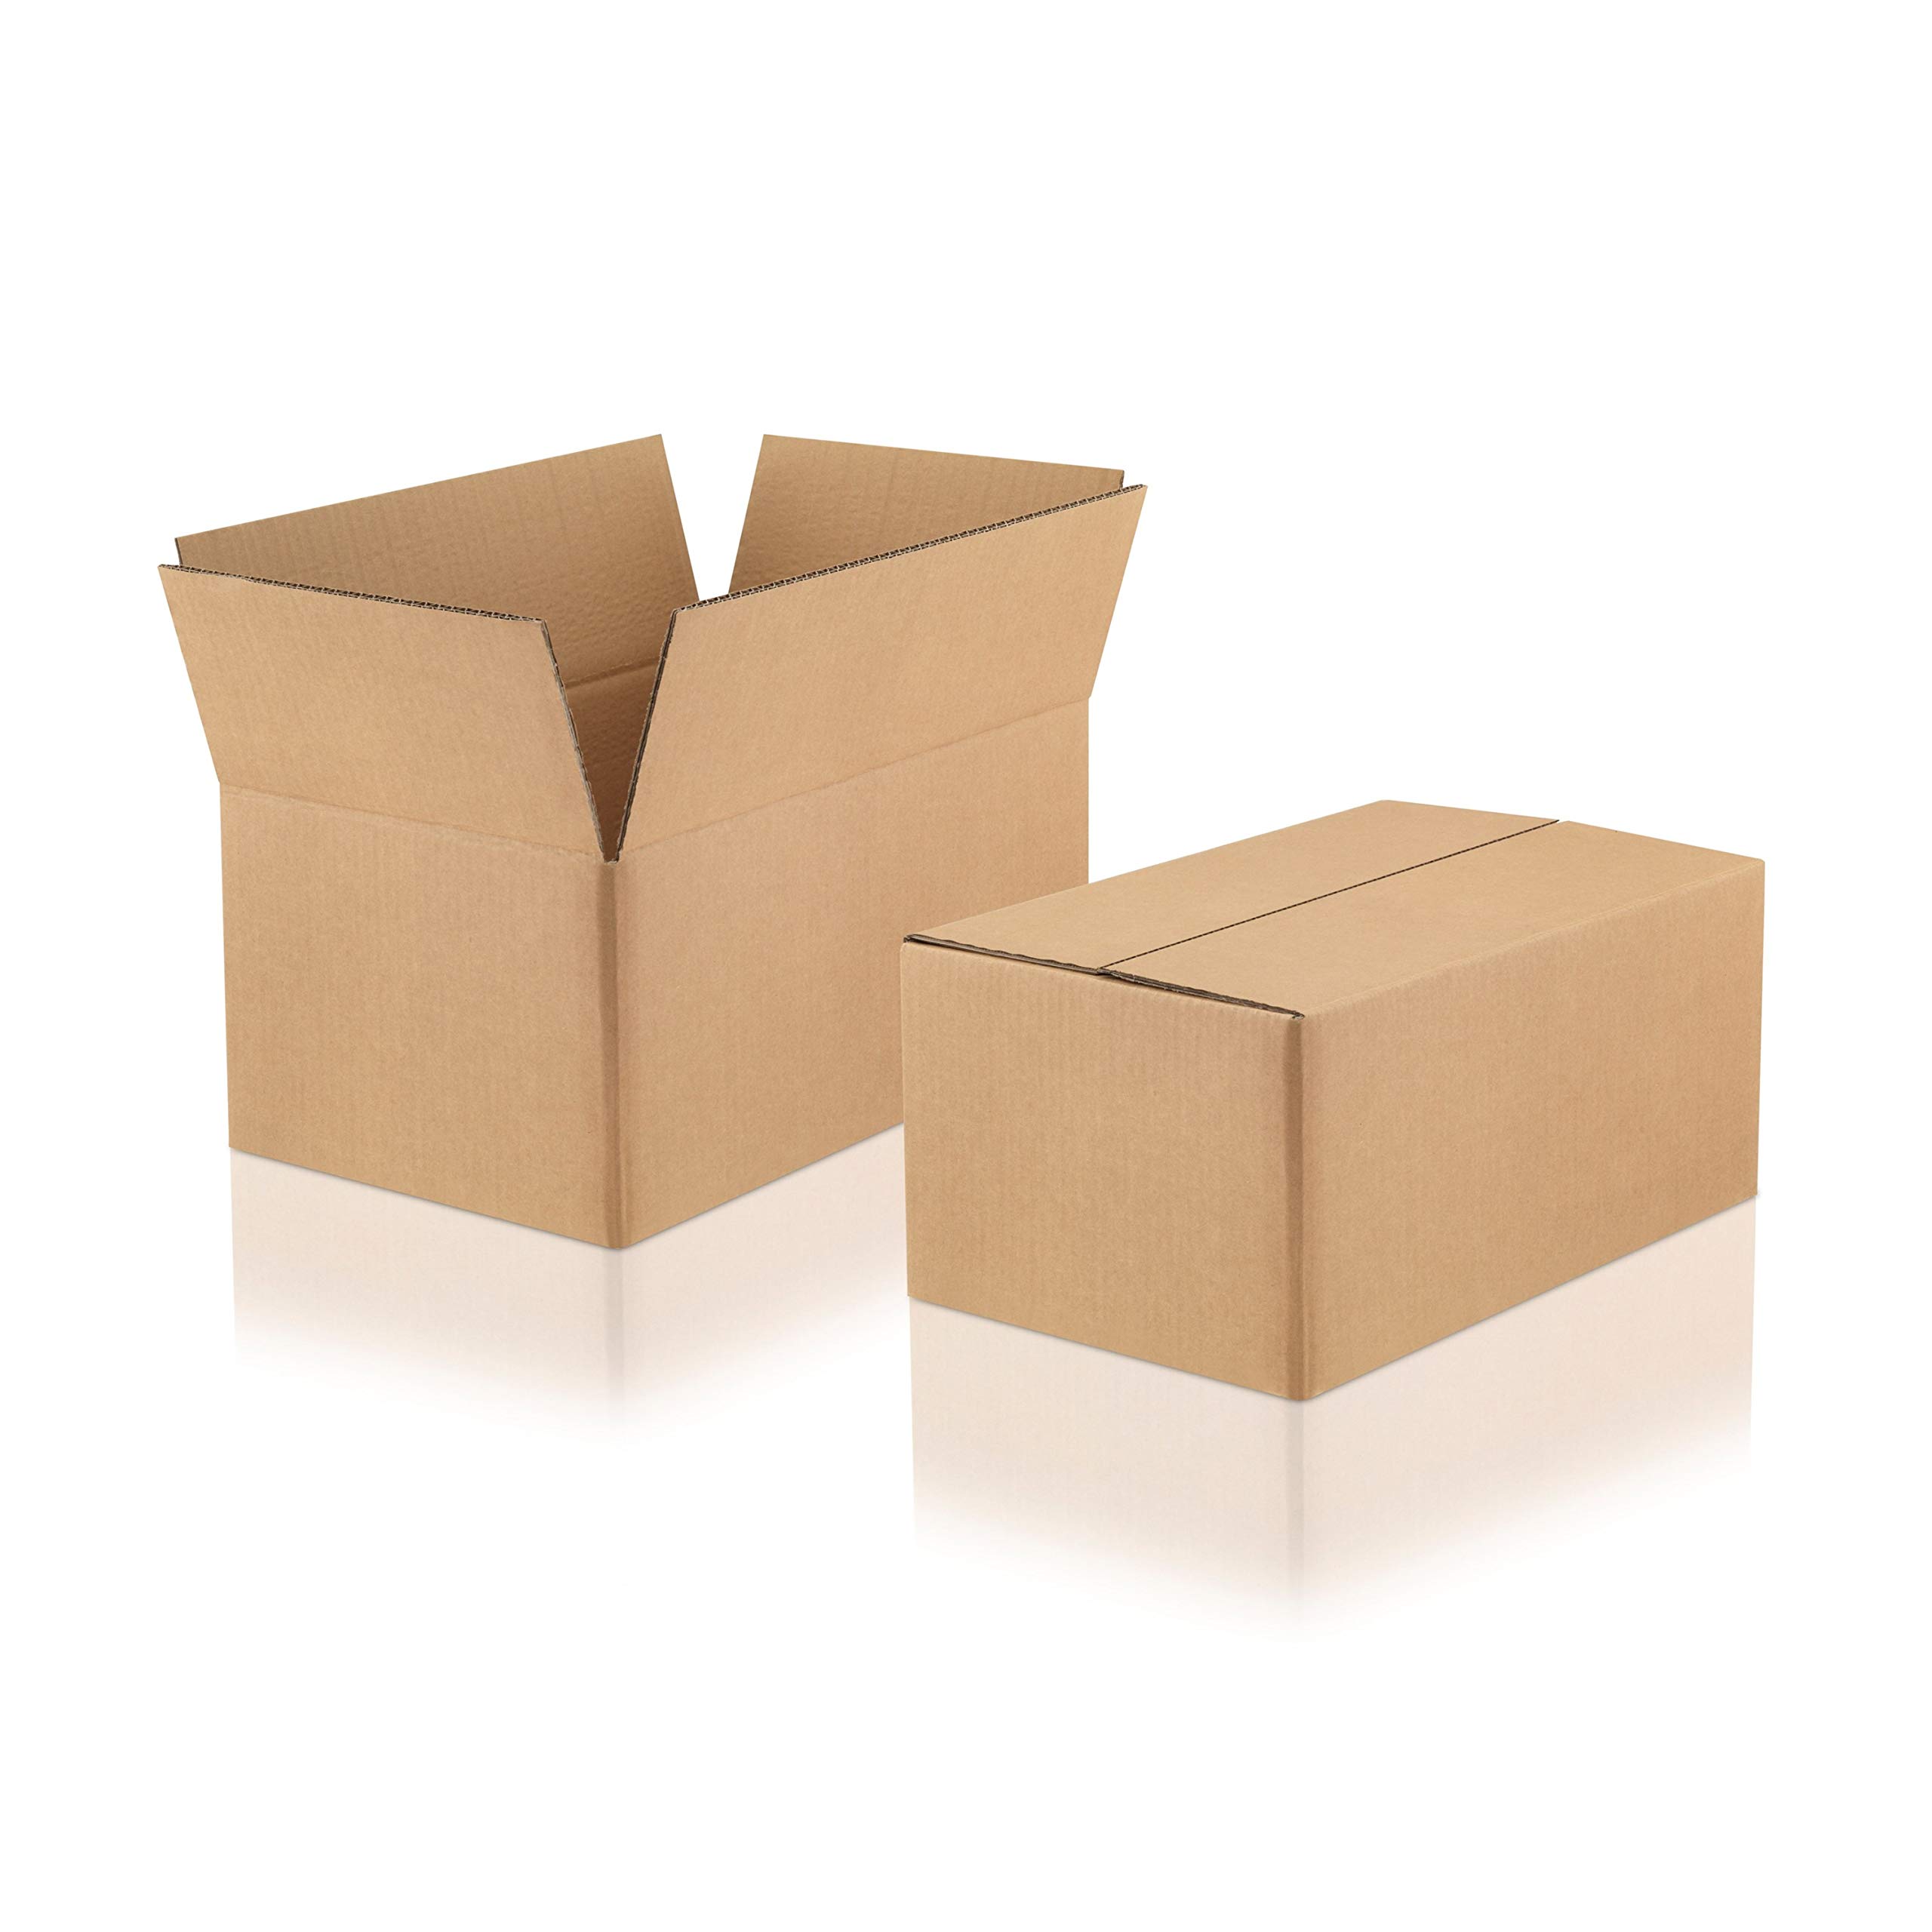 WPTrading - 10 Stück Versandkarton 2-wellig 380 x 200 x 200 mm Wellpappe (Nr. 2W-41A) Braun - Pappe Faltkarton für Warenversendung, Paket & Päckchen groß (L) - Karton Versandverpackung extra stabil